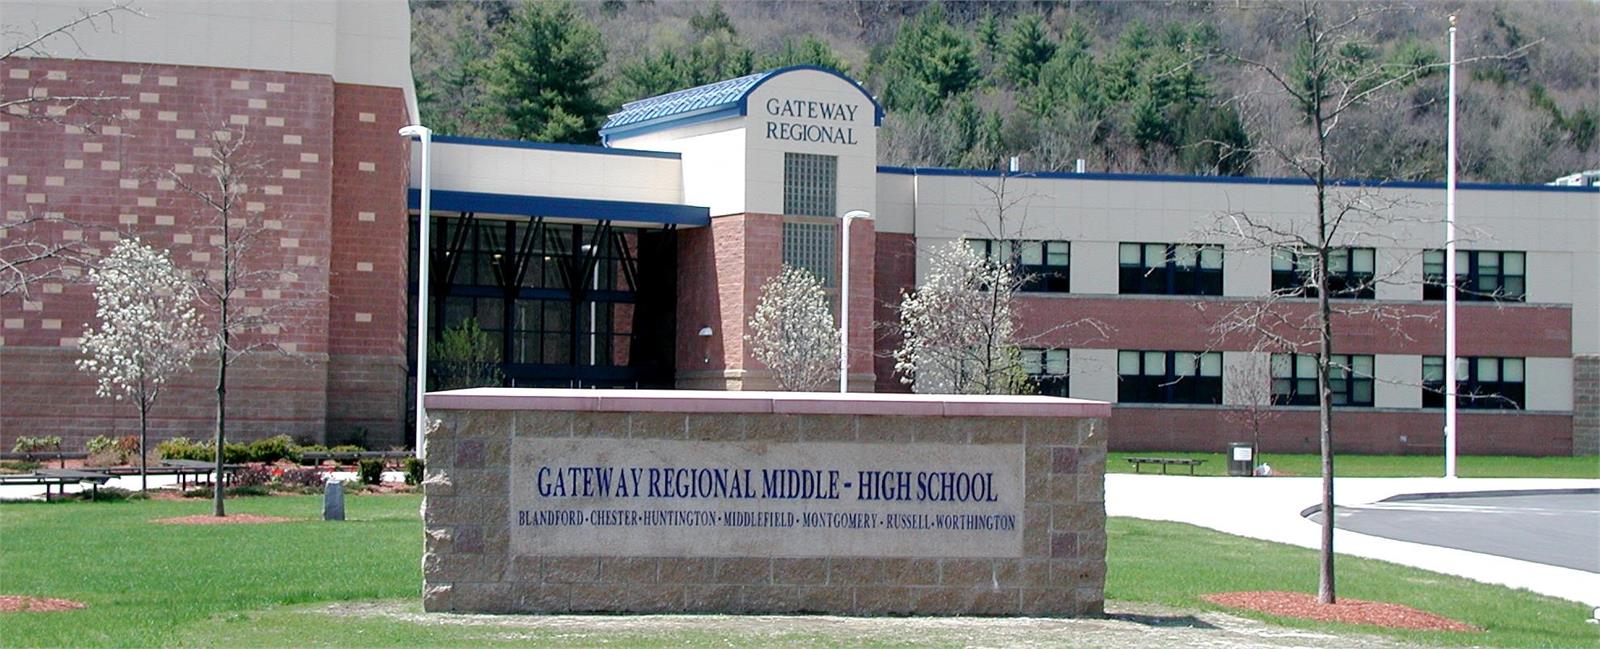 scc-viewing-school-gateway-regional-high-school